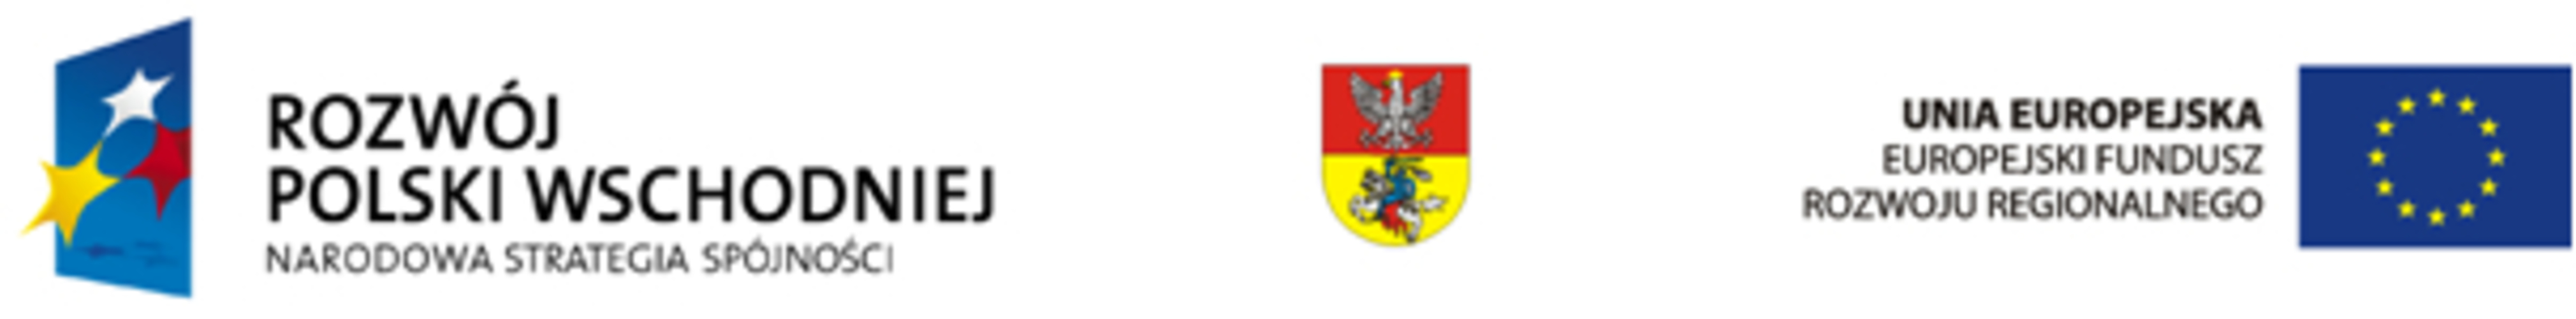 Logo programu Rozwój Polski Wschodniej